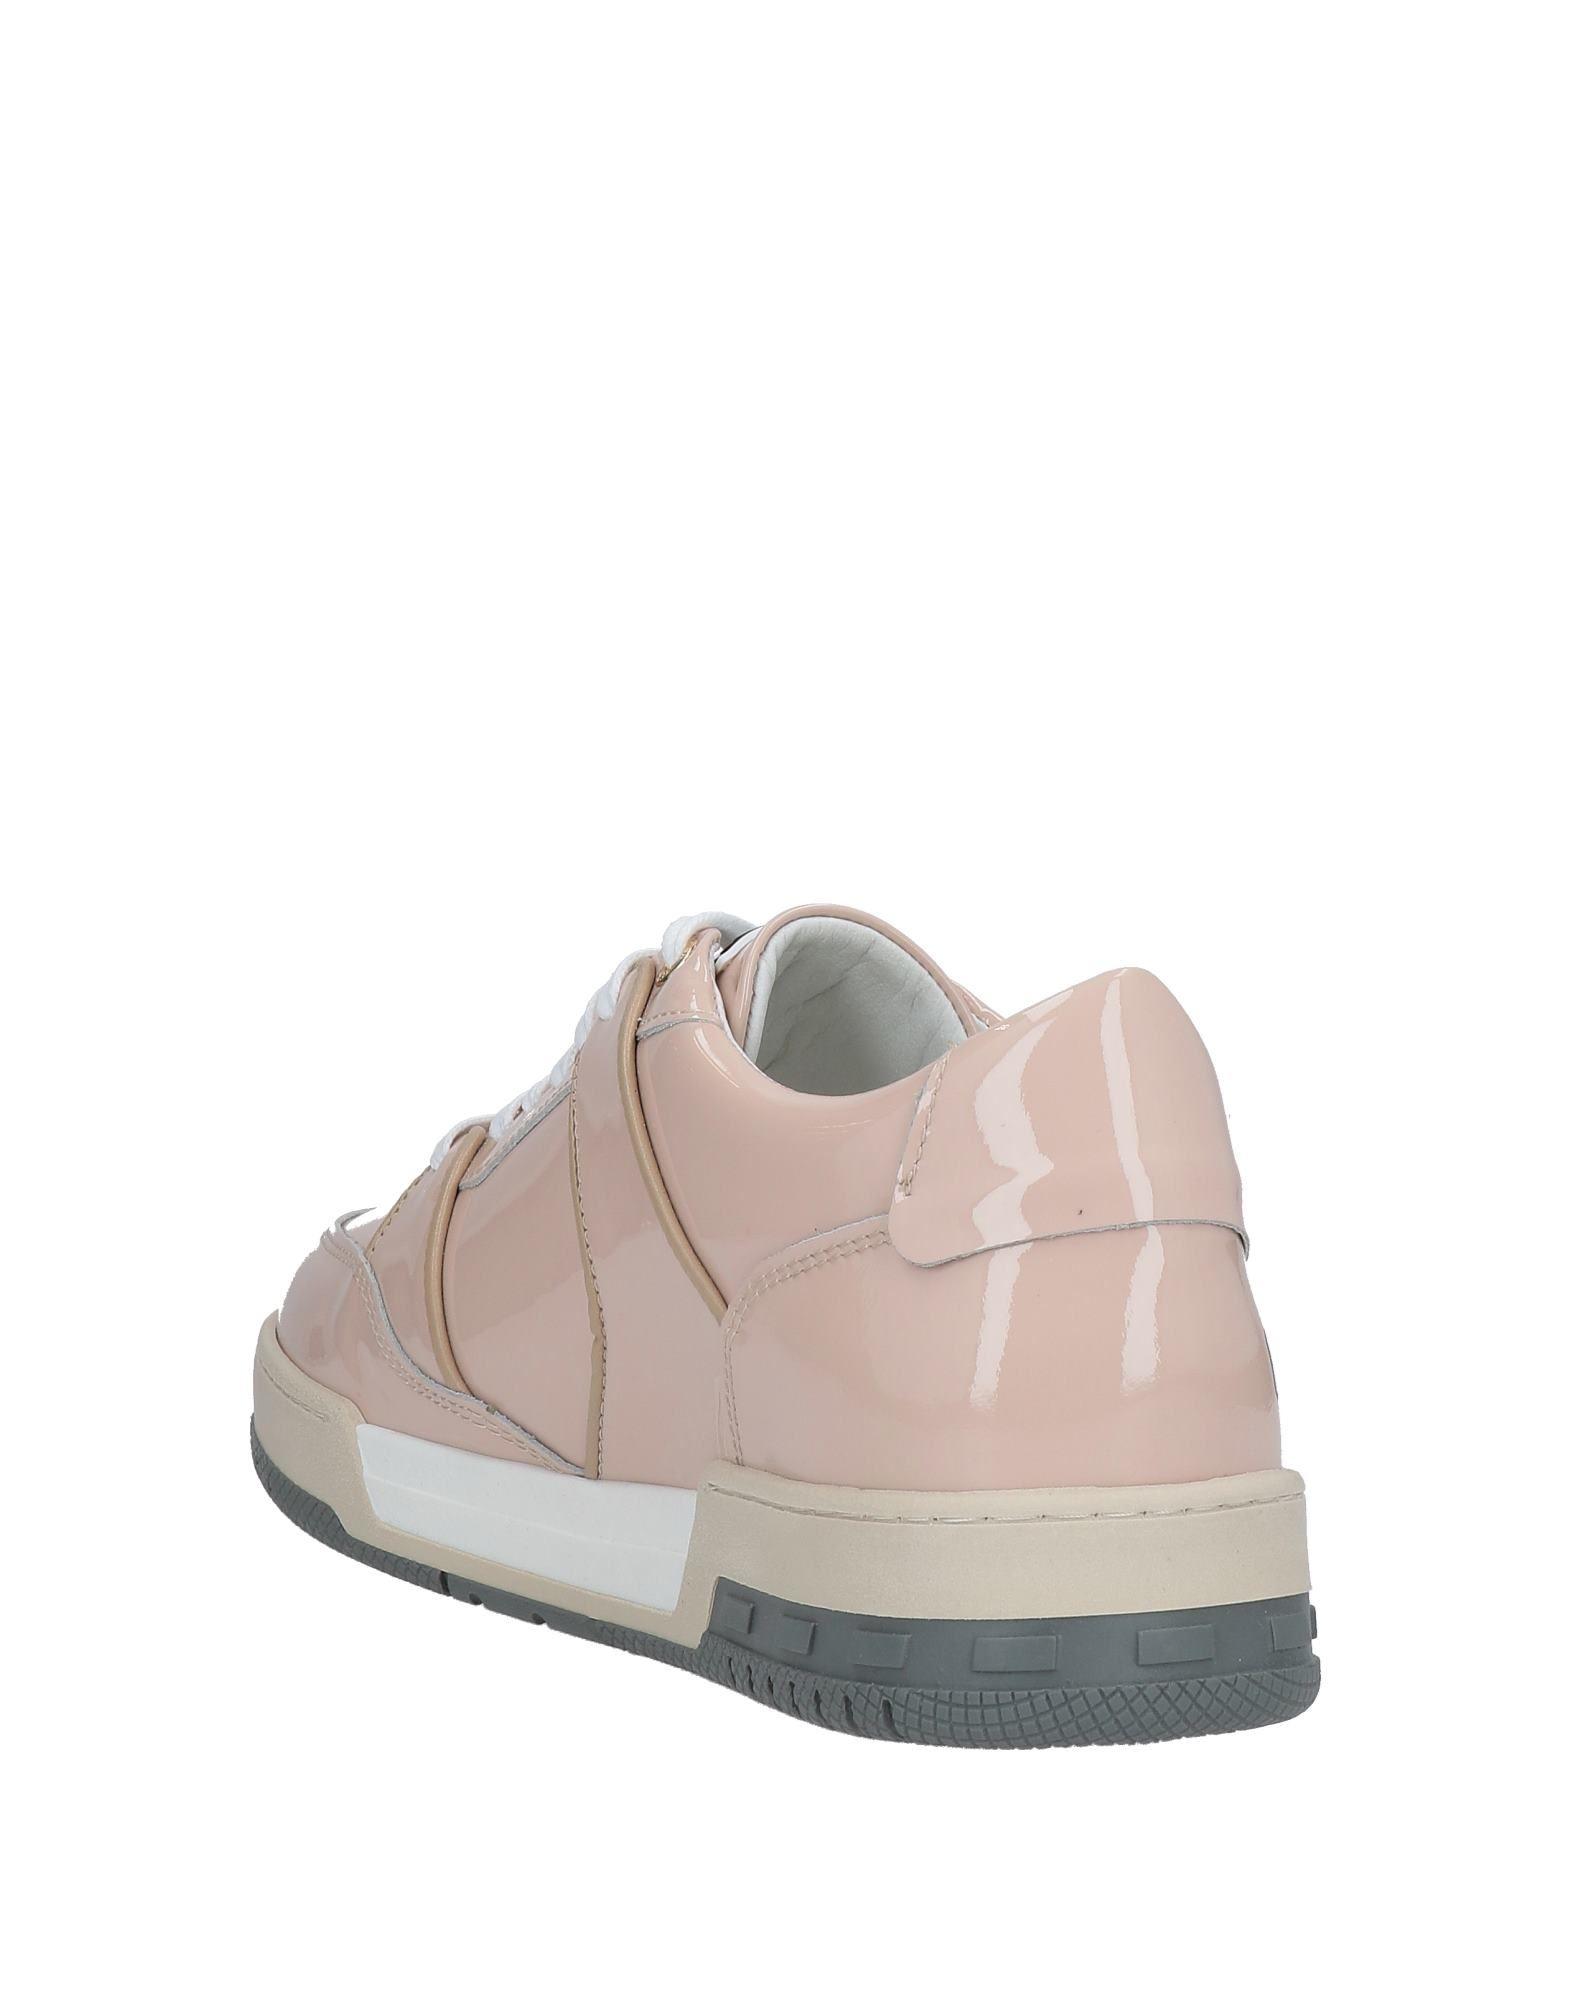 Mercer Amsterdam Sneakers in Pink | Lyst